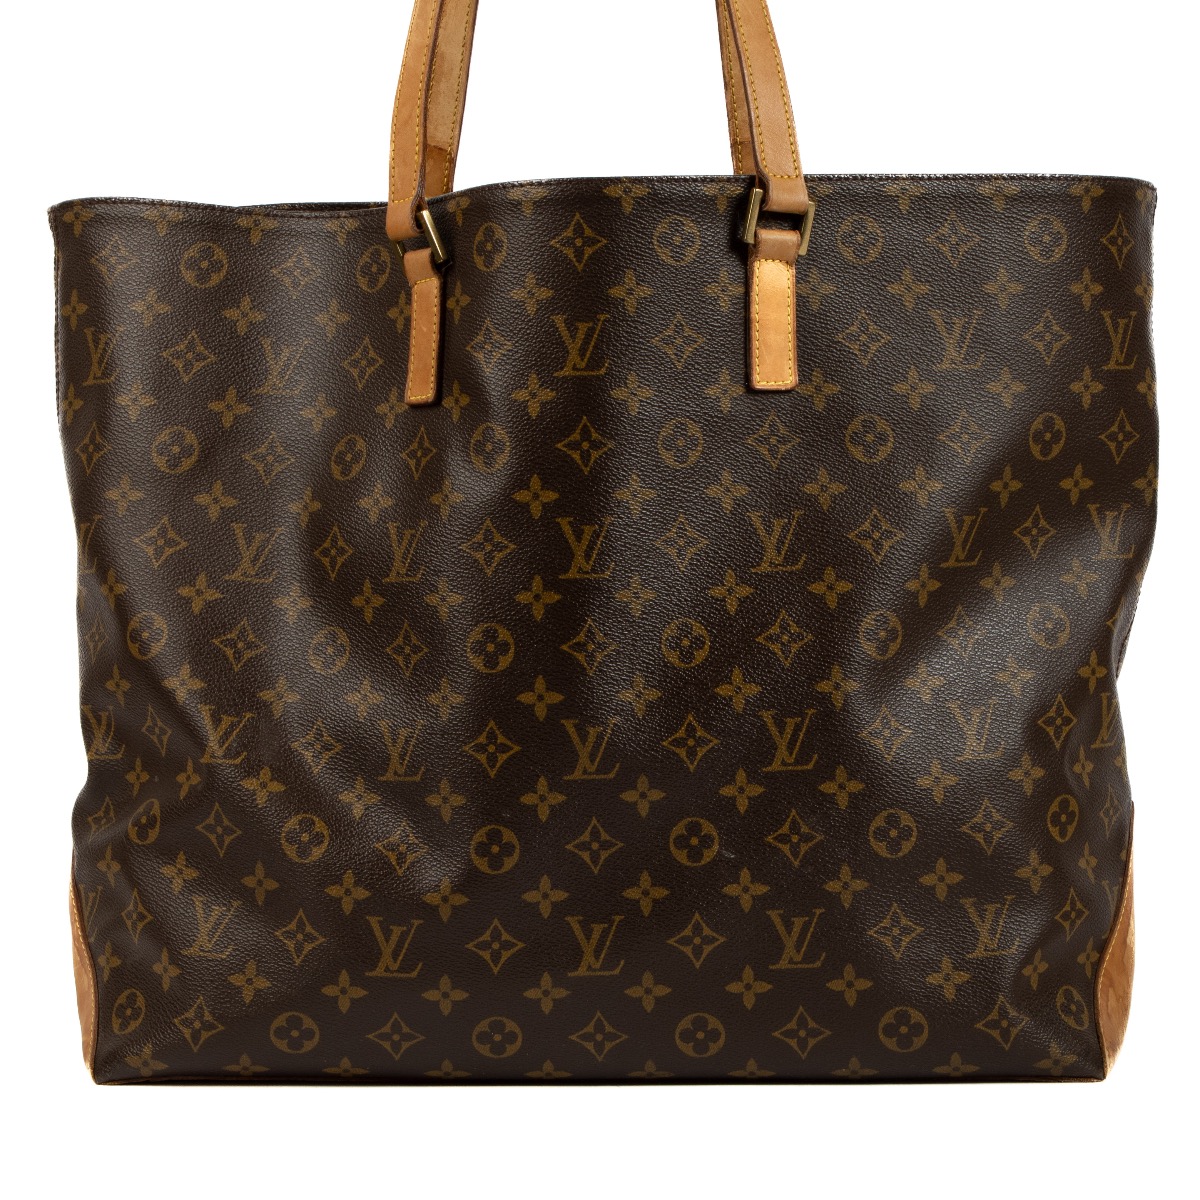 Louis Vuitton, Bags, Authentic Louis Vuitton Cabas Mezzo Shoulder Bag  Tote Handbag Purse